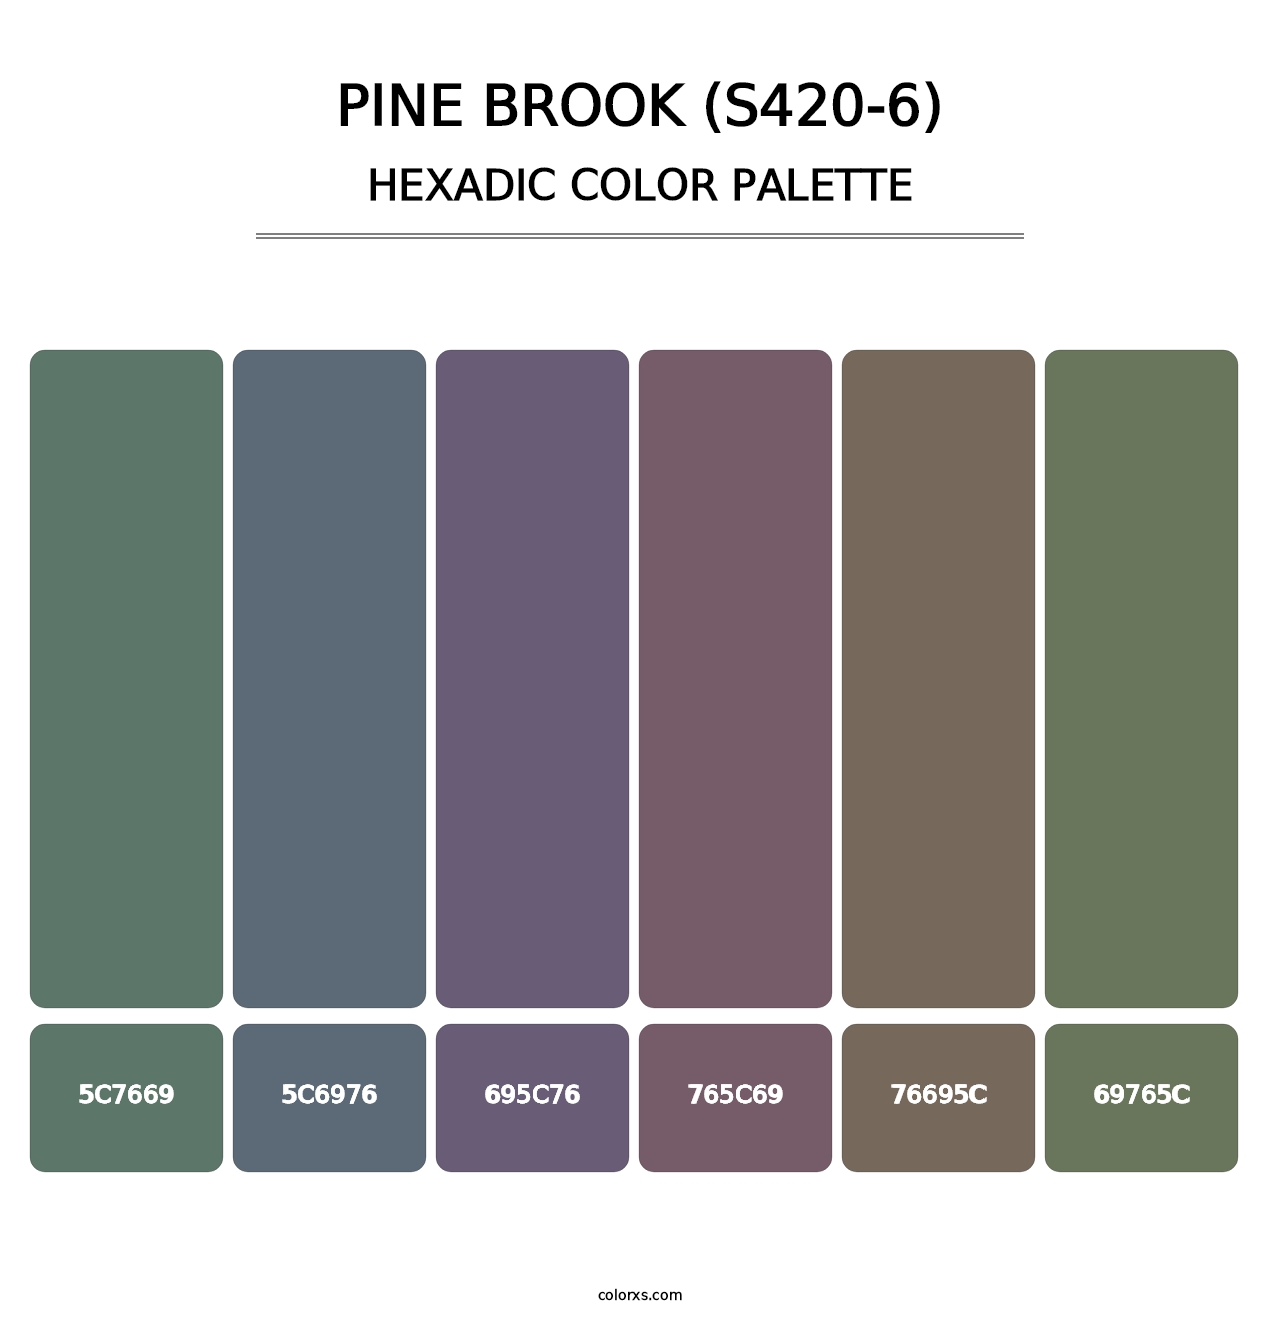 Pine Brook (S420-6) - Hexadic Color Palette